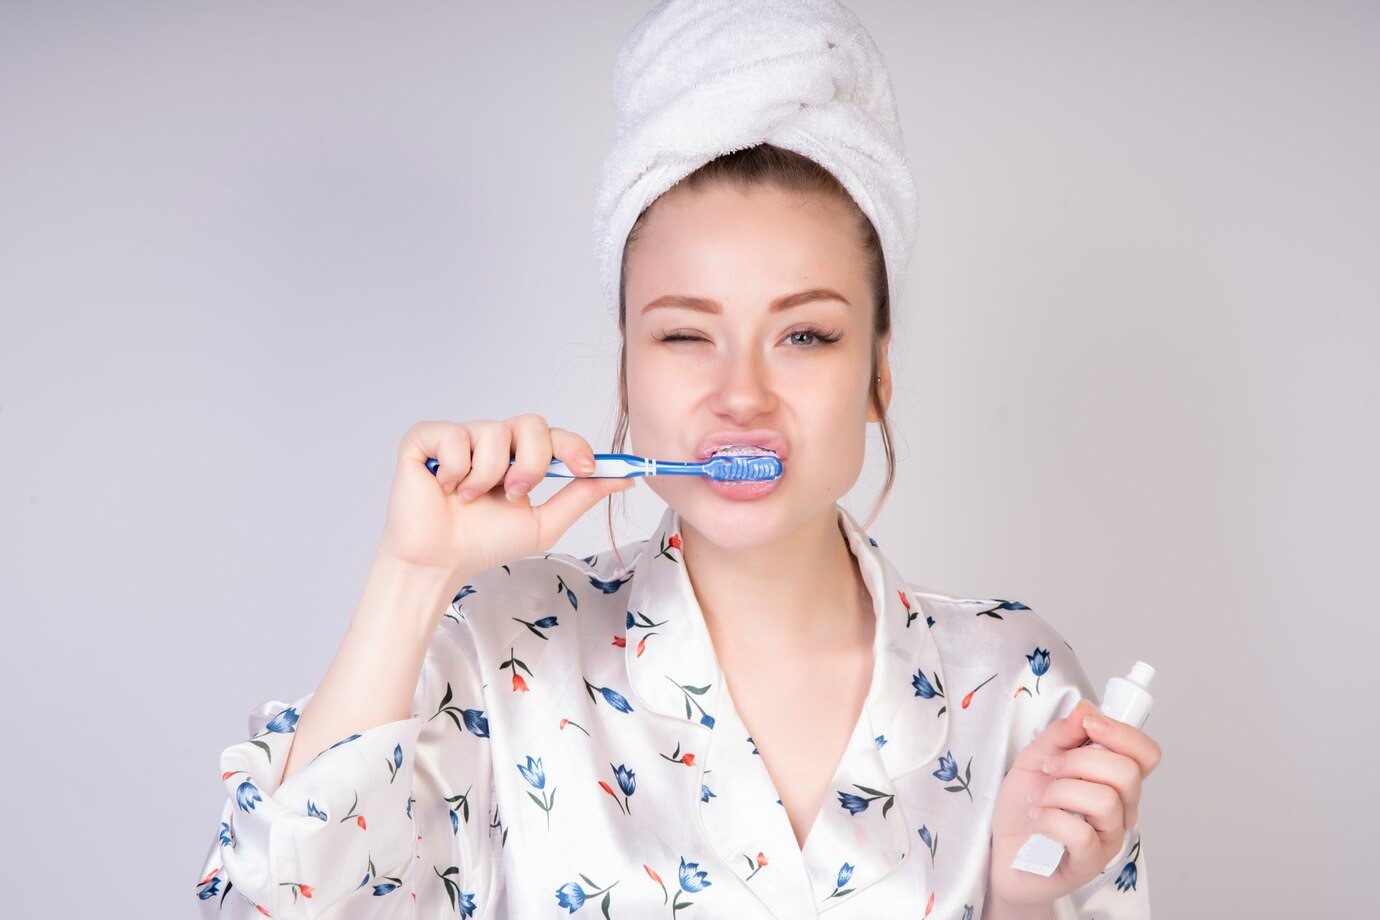 Benarkah Menyikat Gigi Bisa Membatalkan Puasa? Cek Hukumnya Yuk